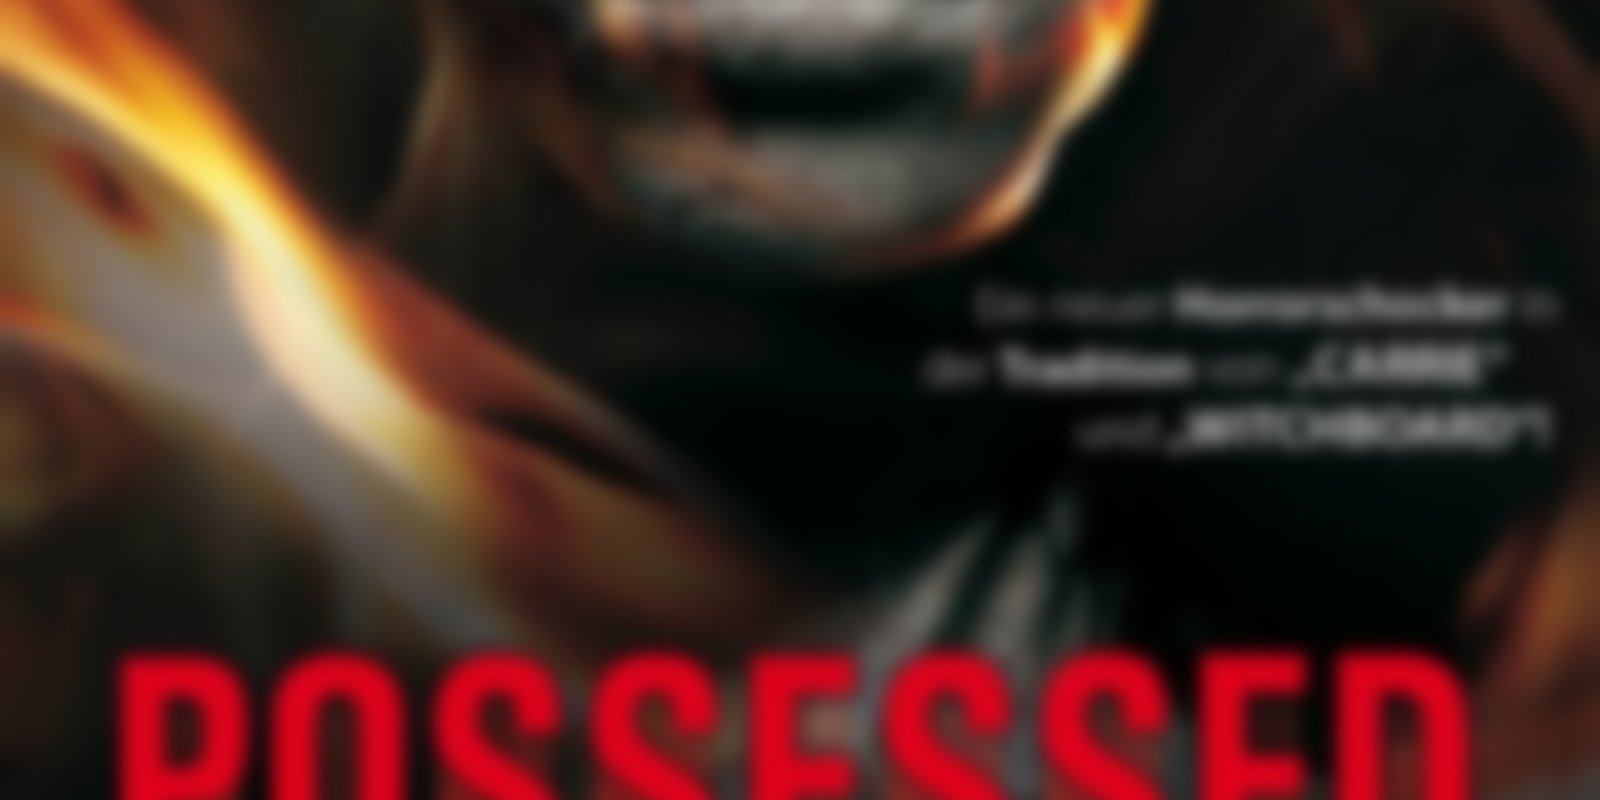 Possessed - Besessen